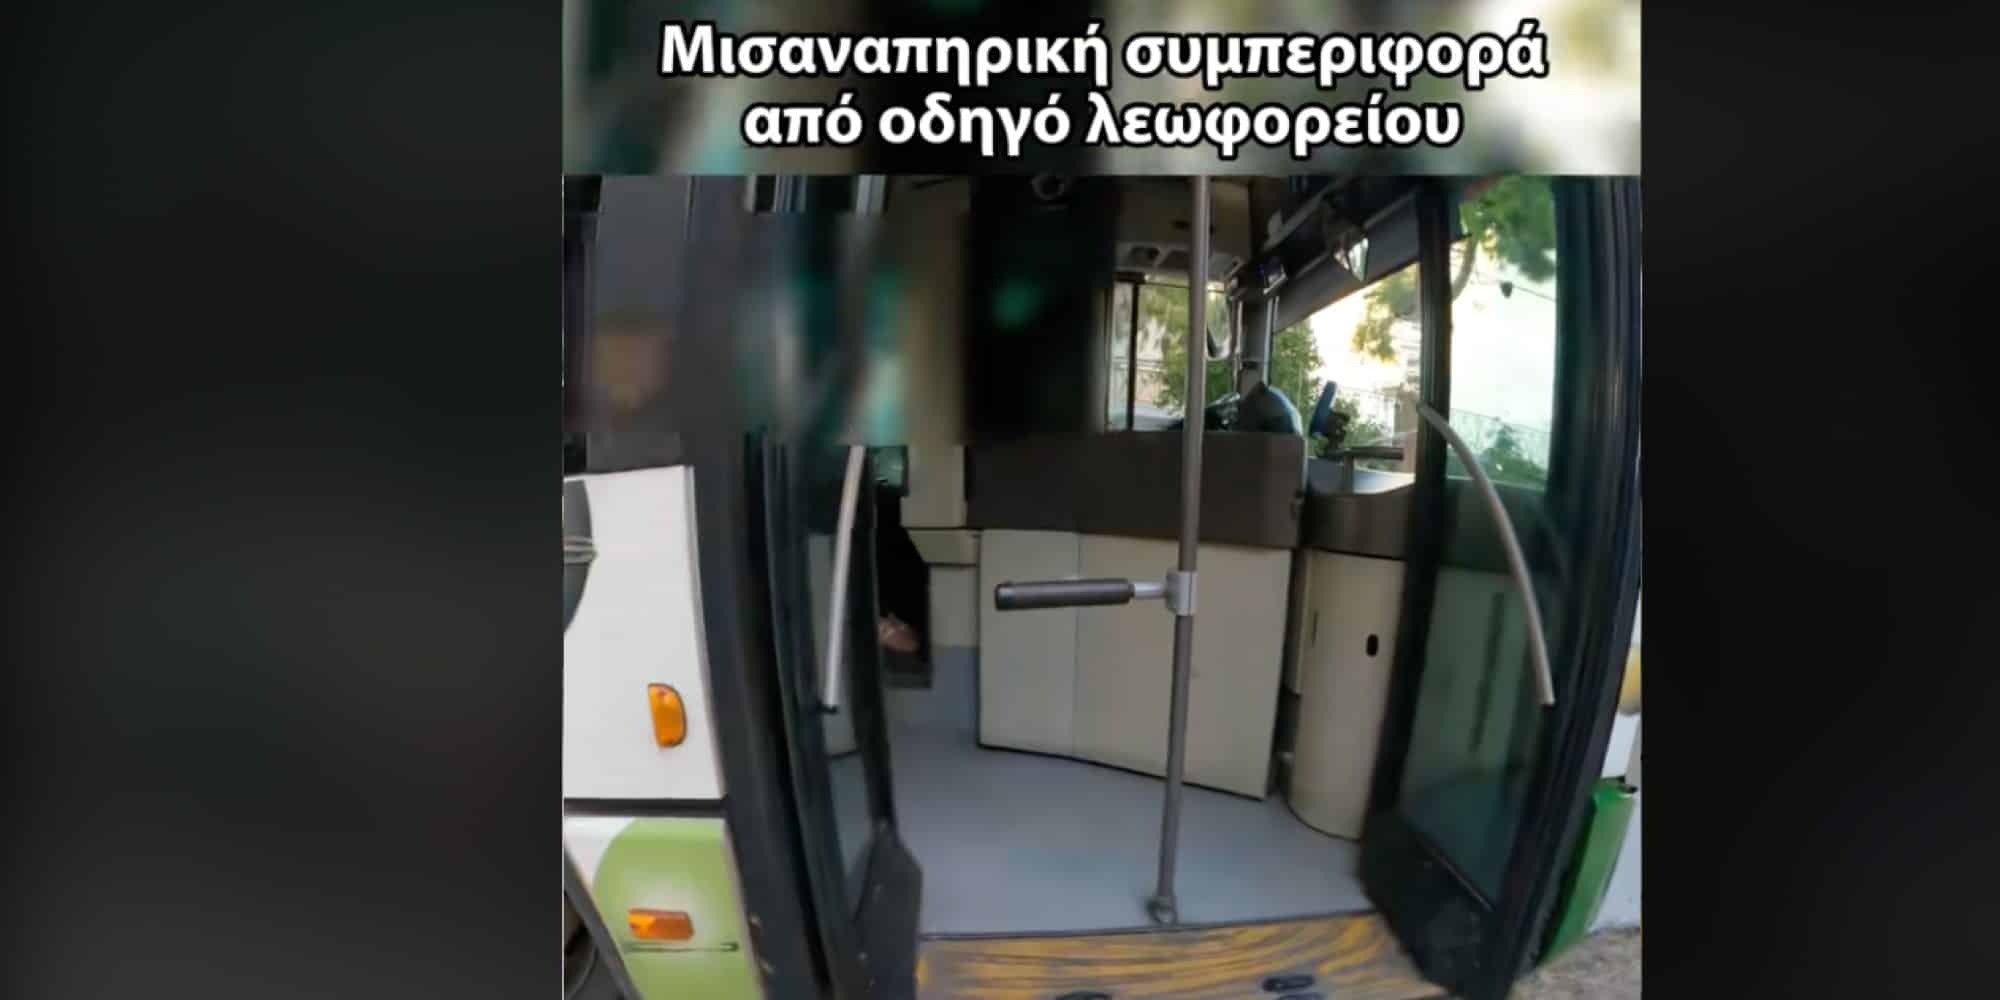 Καταγγελία ΑμεΑ για οδηγό λεωφορείου με χαλασμένη ράμπα